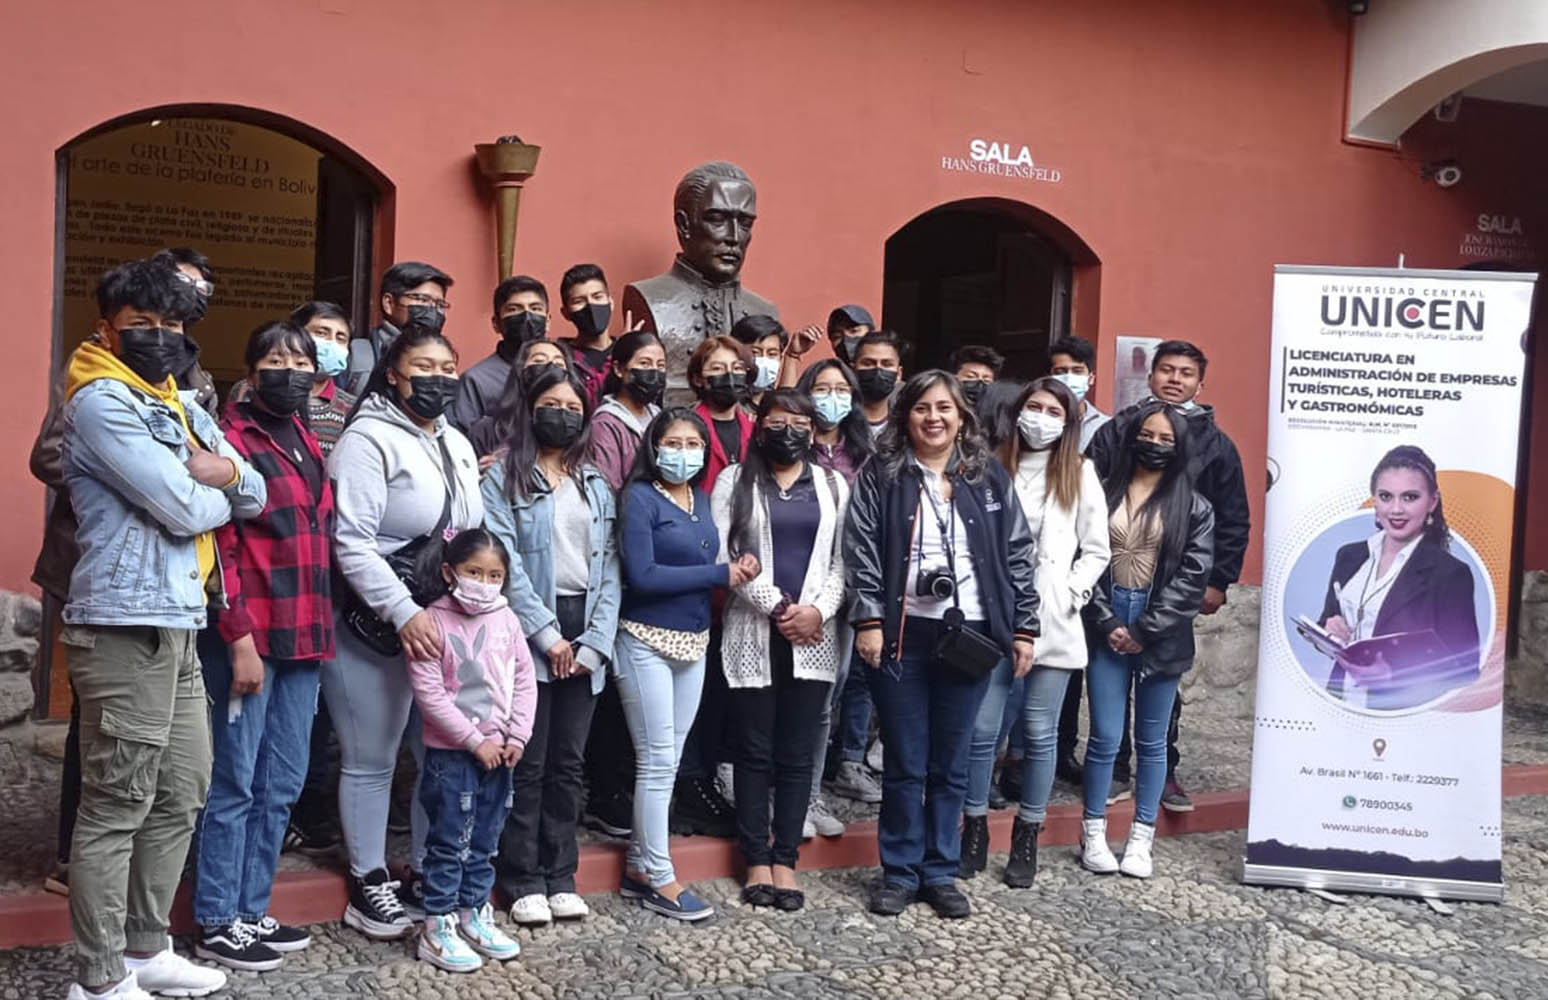 Visita a los museos más emblemáticos de la ciudad de La Paz